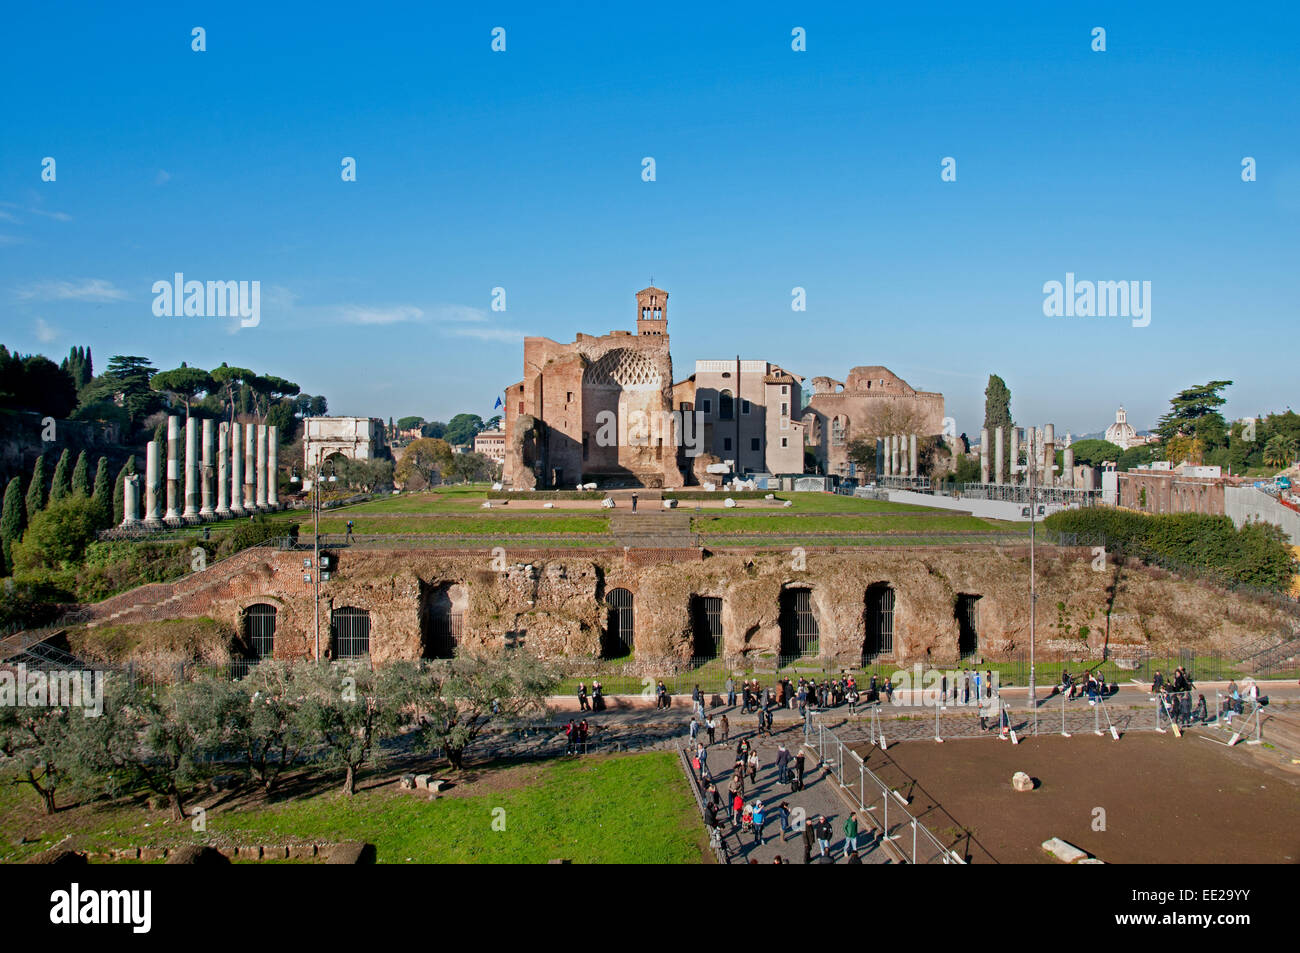 Le Temple de Vénus et de Rome (Tempio de Venere e Roma) Ruines de Rome Italie Latium Romain Forum Romanum Banque D'Images